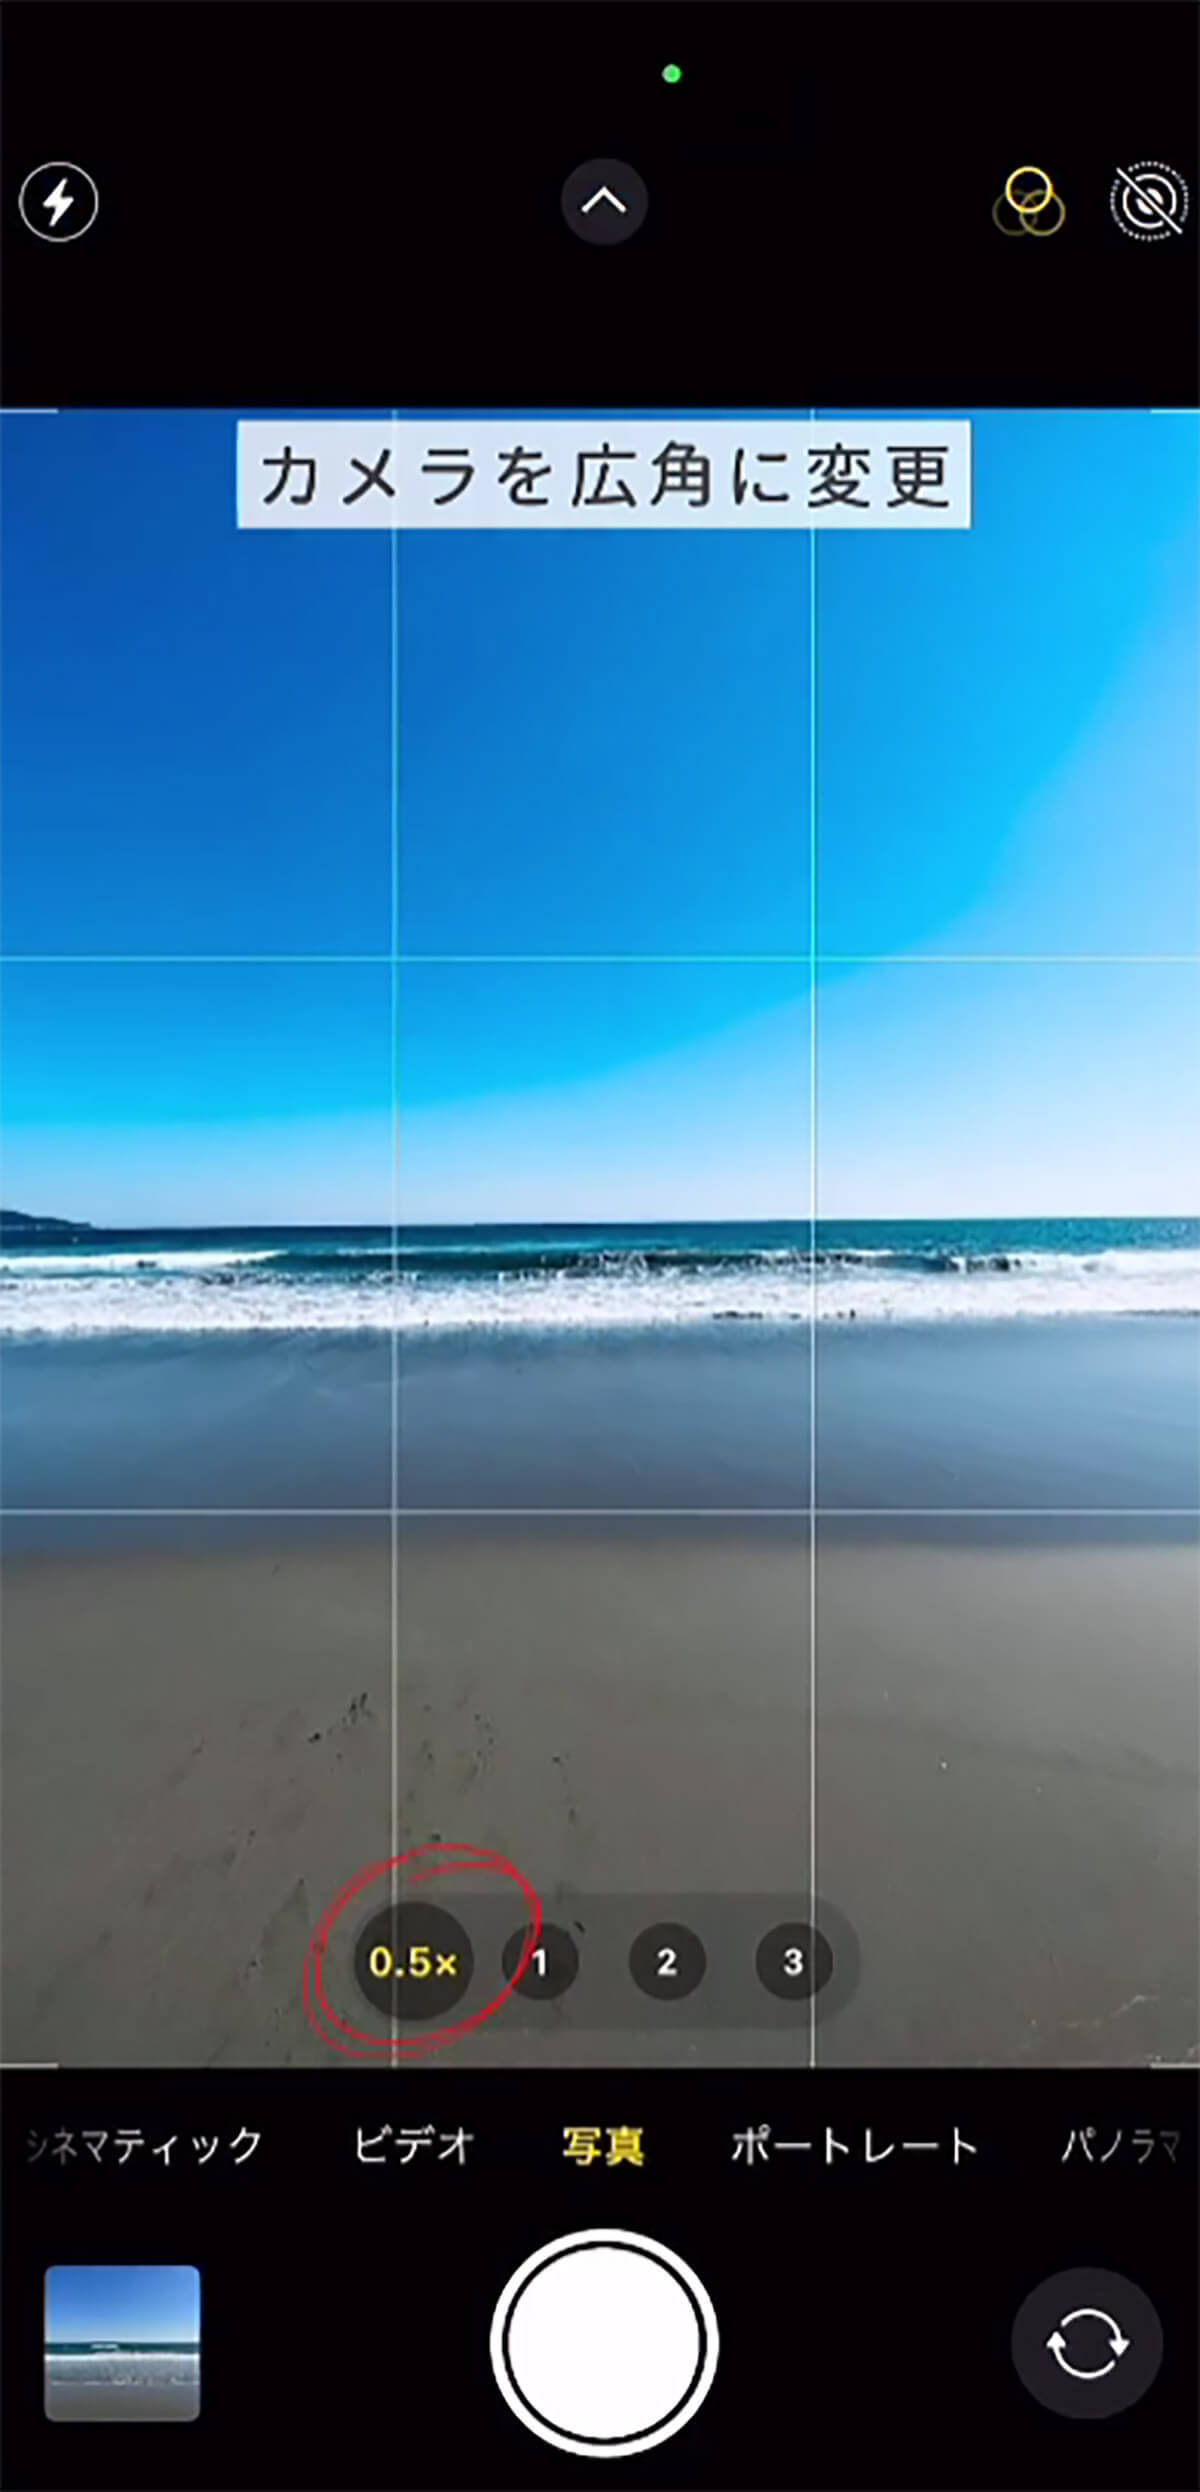 iPhoneで海をダイナミックに撮影する方法が話題 – 人物の写り込みには注意！